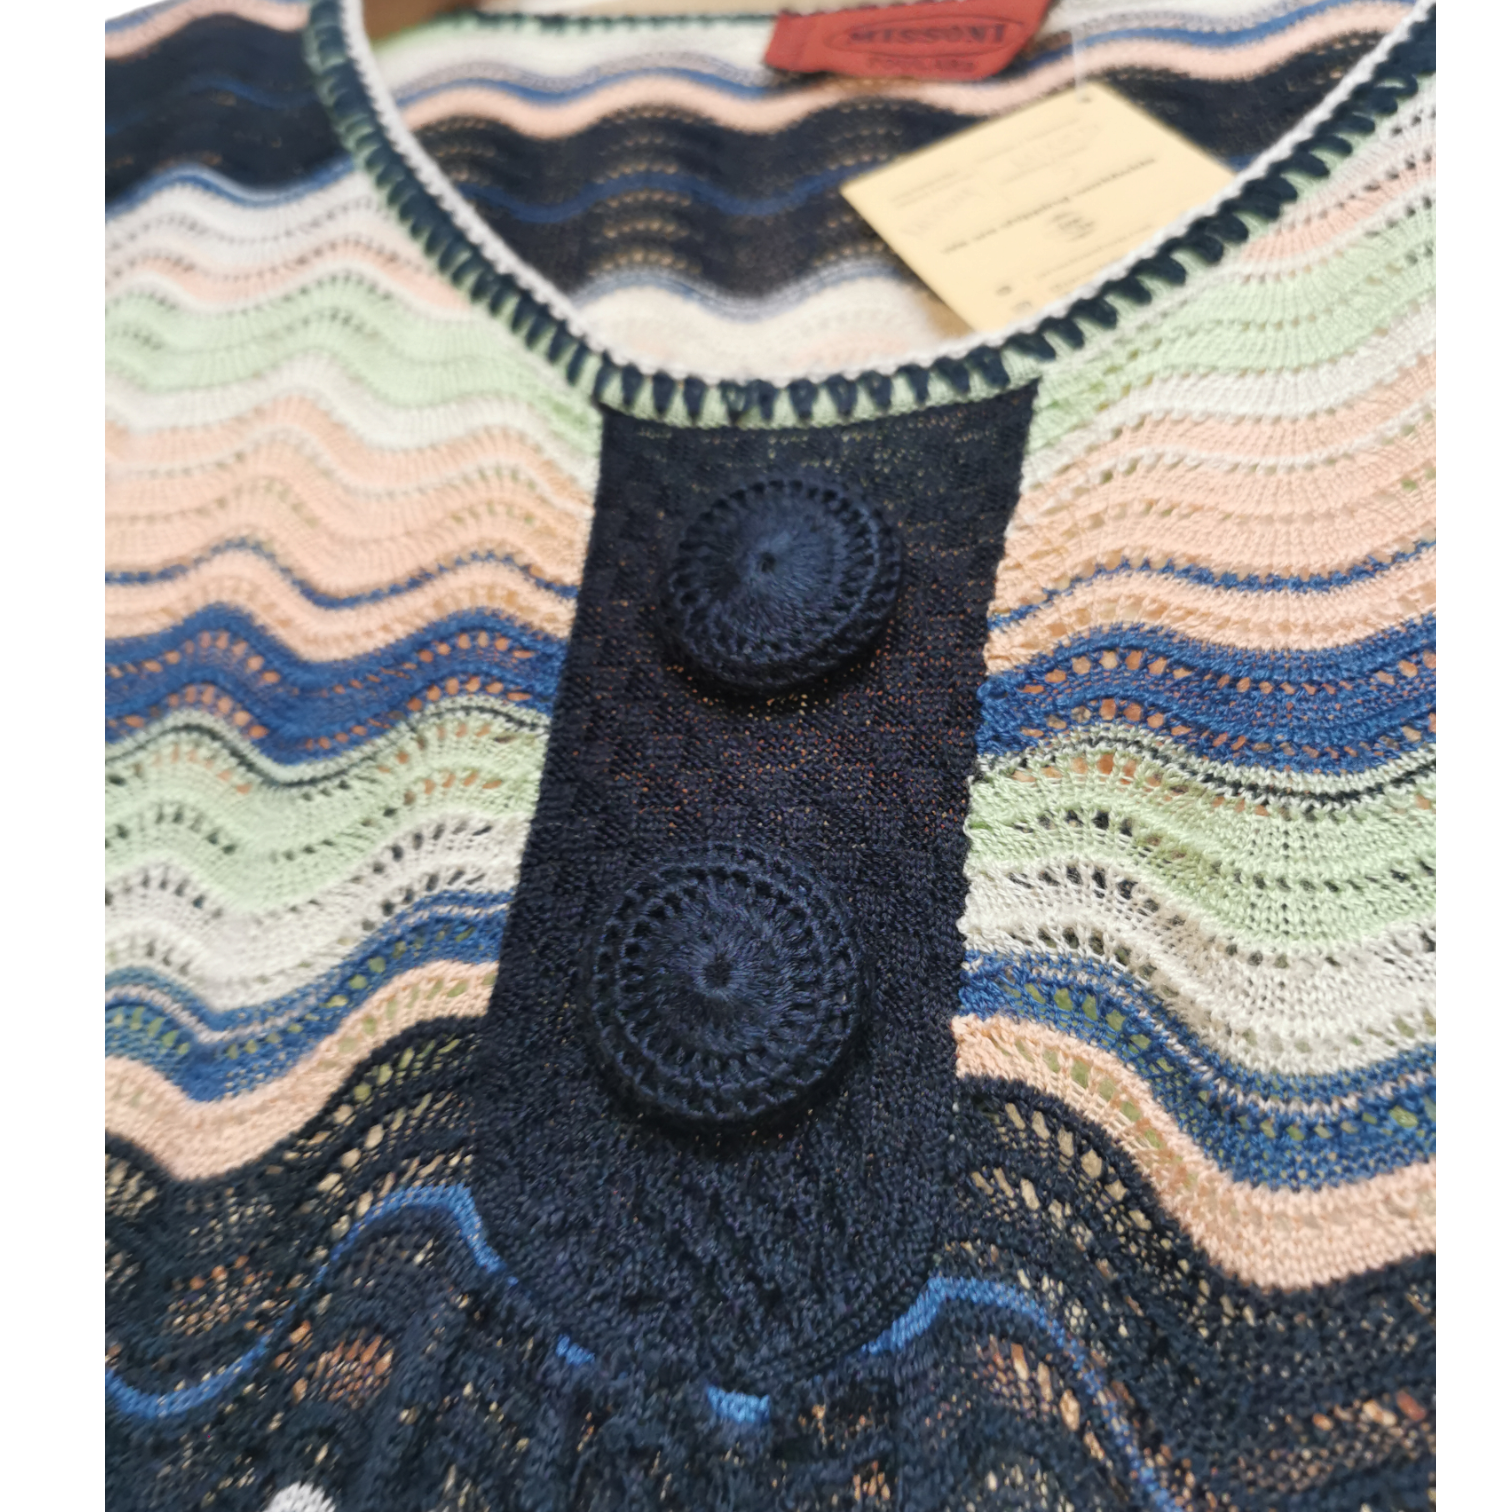 Colourful Knit Dress / Šarena Končana Haljina